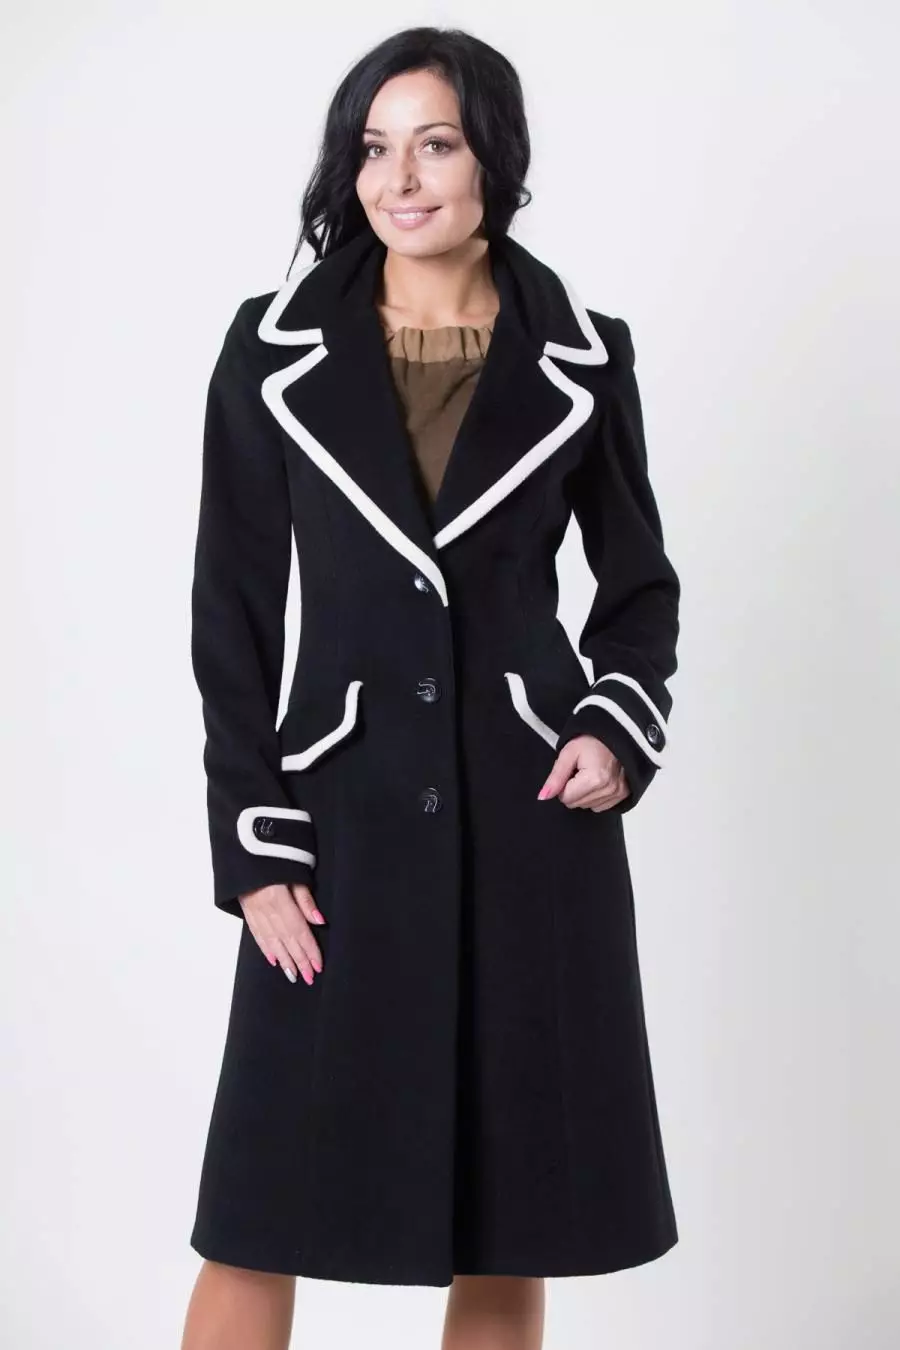 Kobieta czarny płaszcz (172 zdjęcia): długie, krótkie, z kapturem, czarno-białe, proste, skórzane rękawy, dopasowanie, skóra 611_114